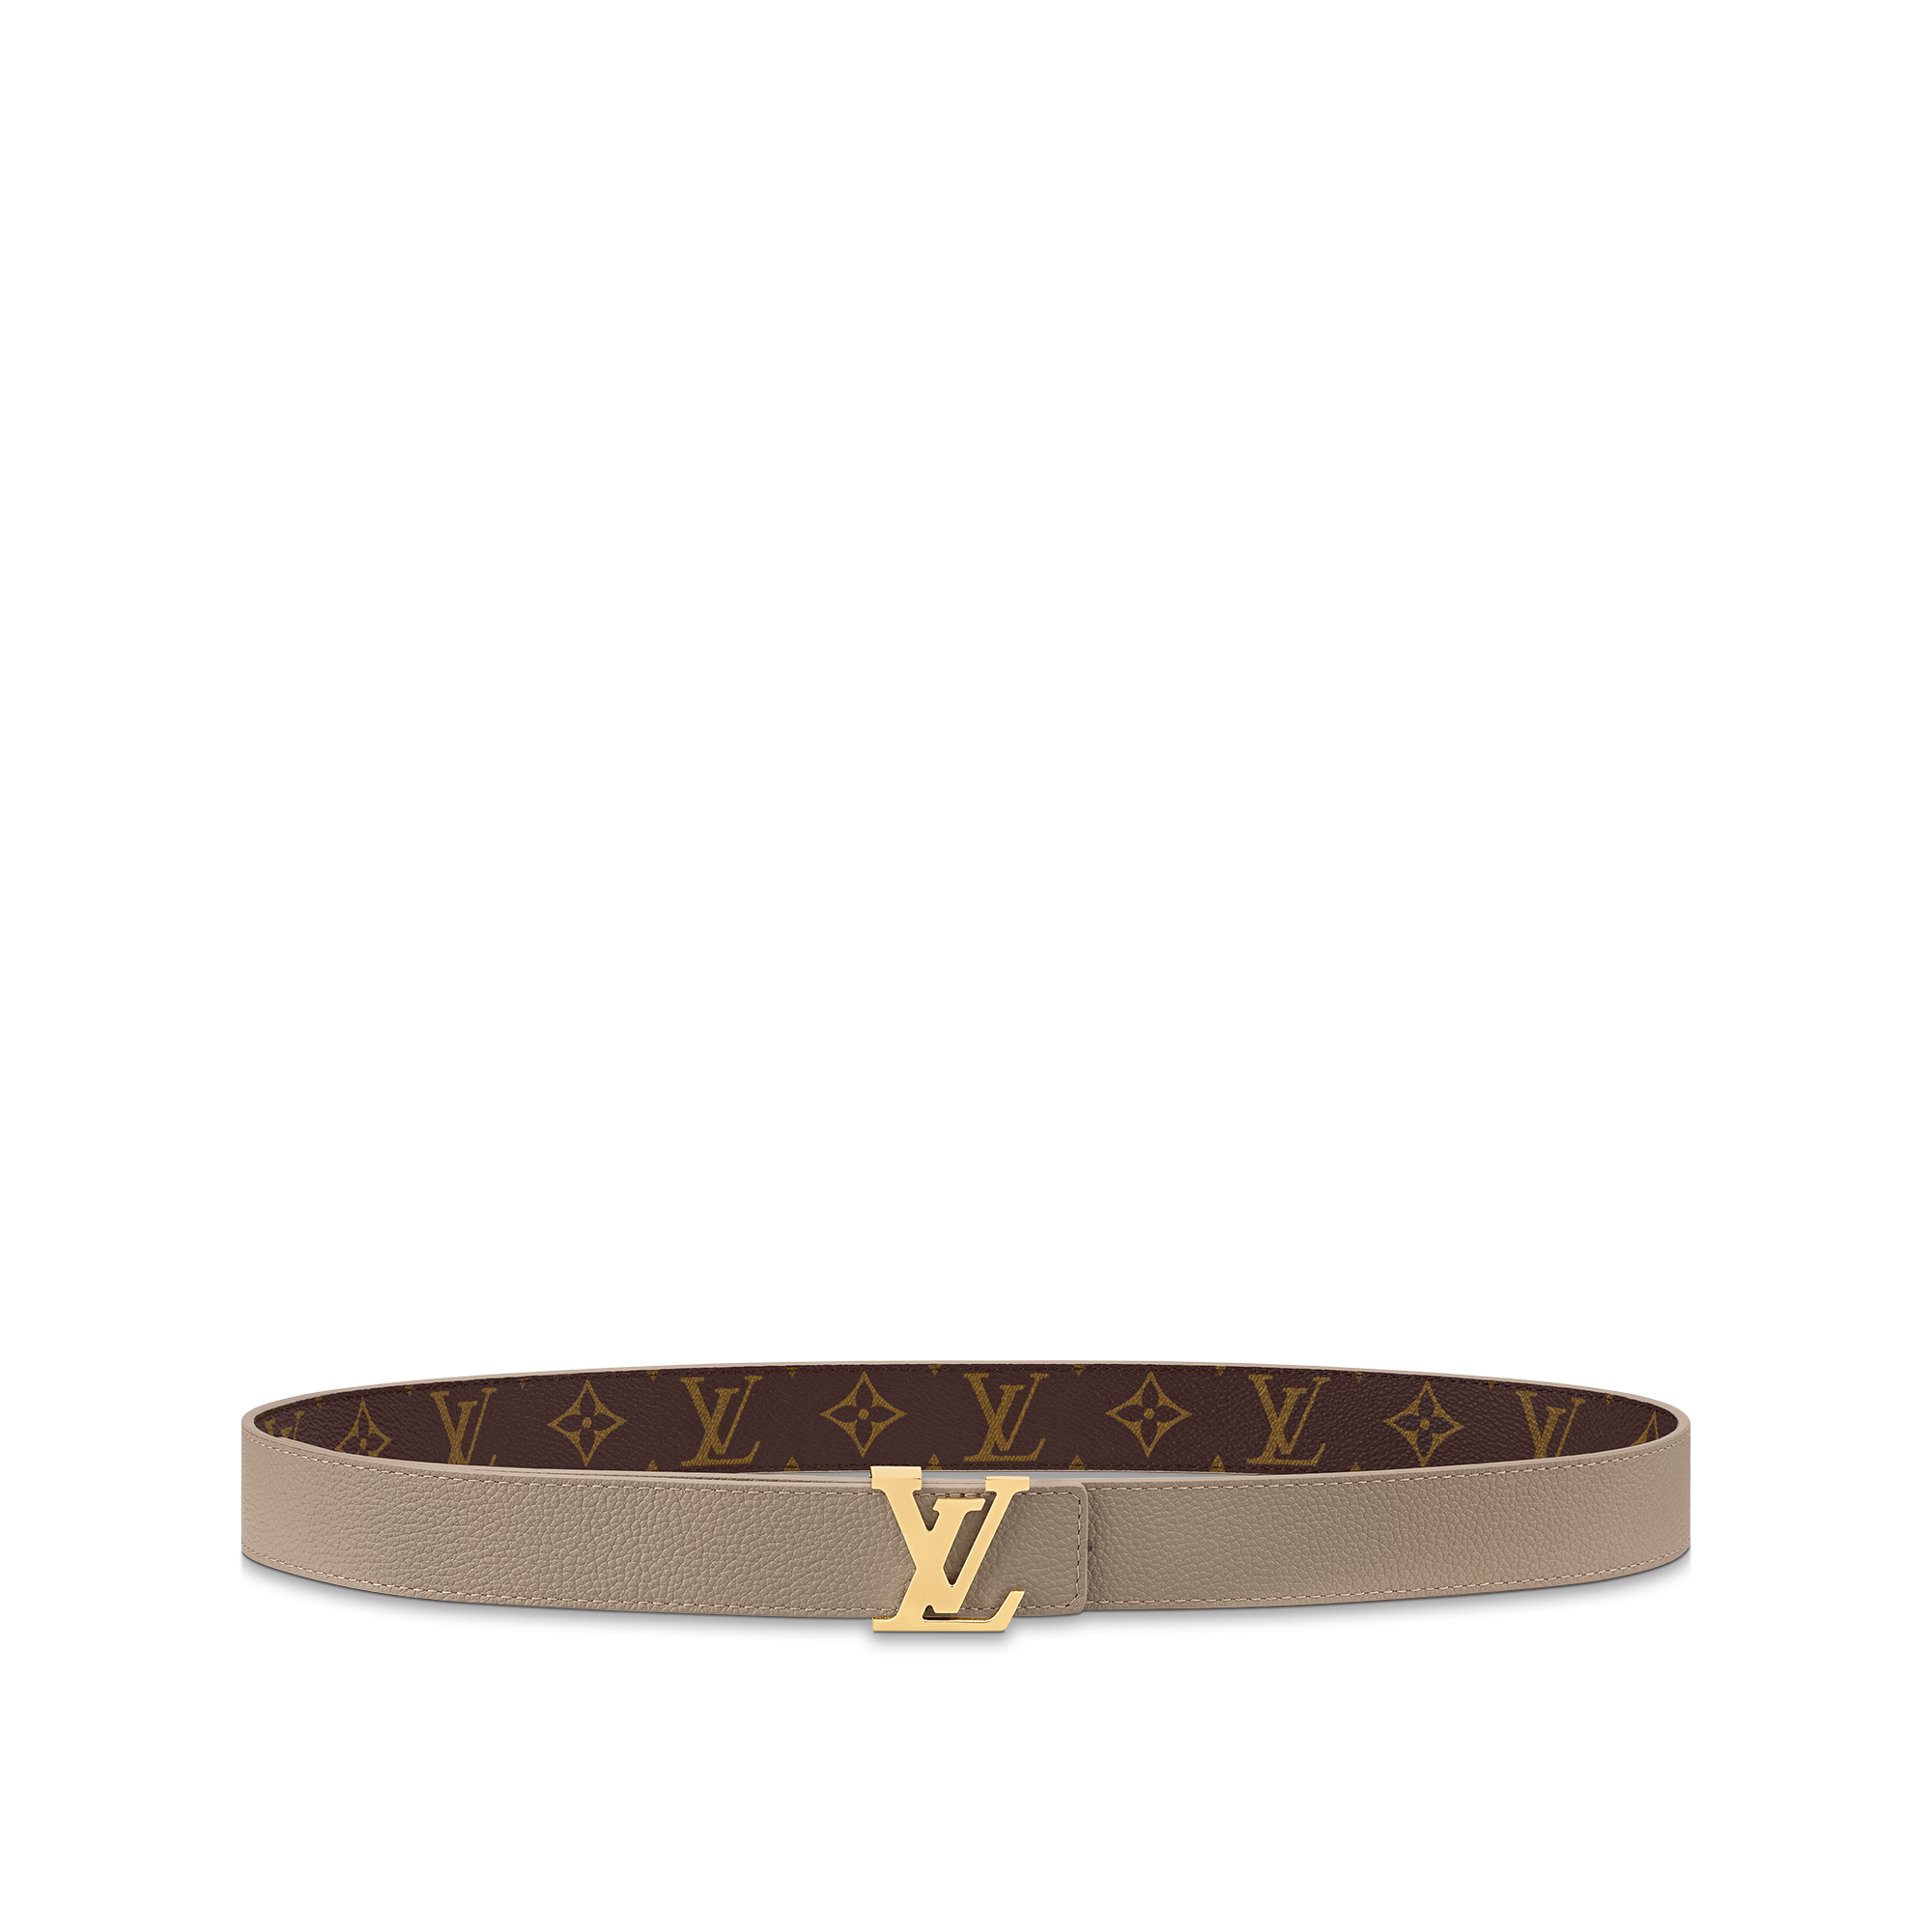 Free: Belt Louis Vuitton Strap, Flowers Belt transparent background PNG  clipart 